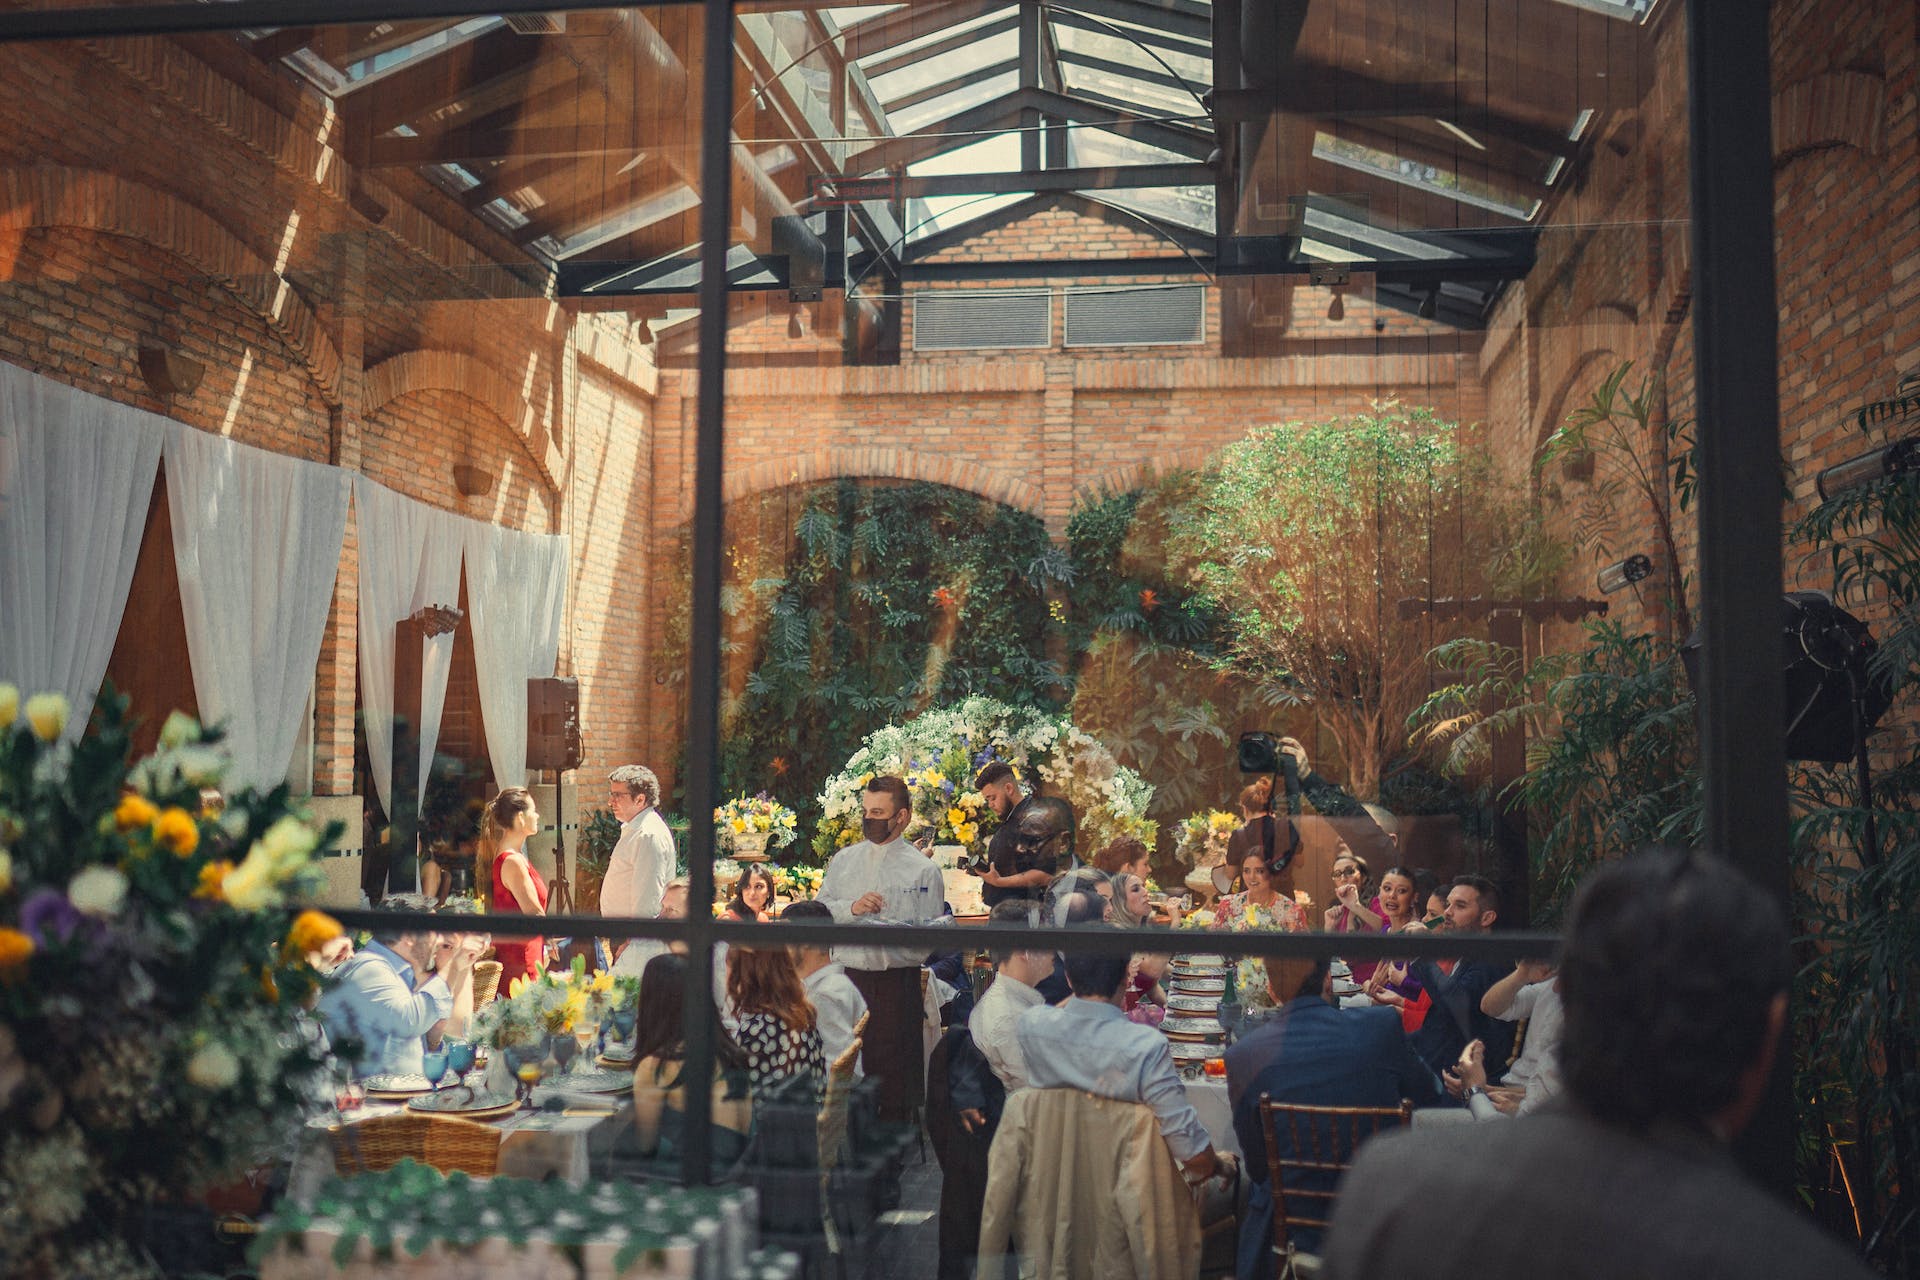 Guests at a wedding | Source: Pexels